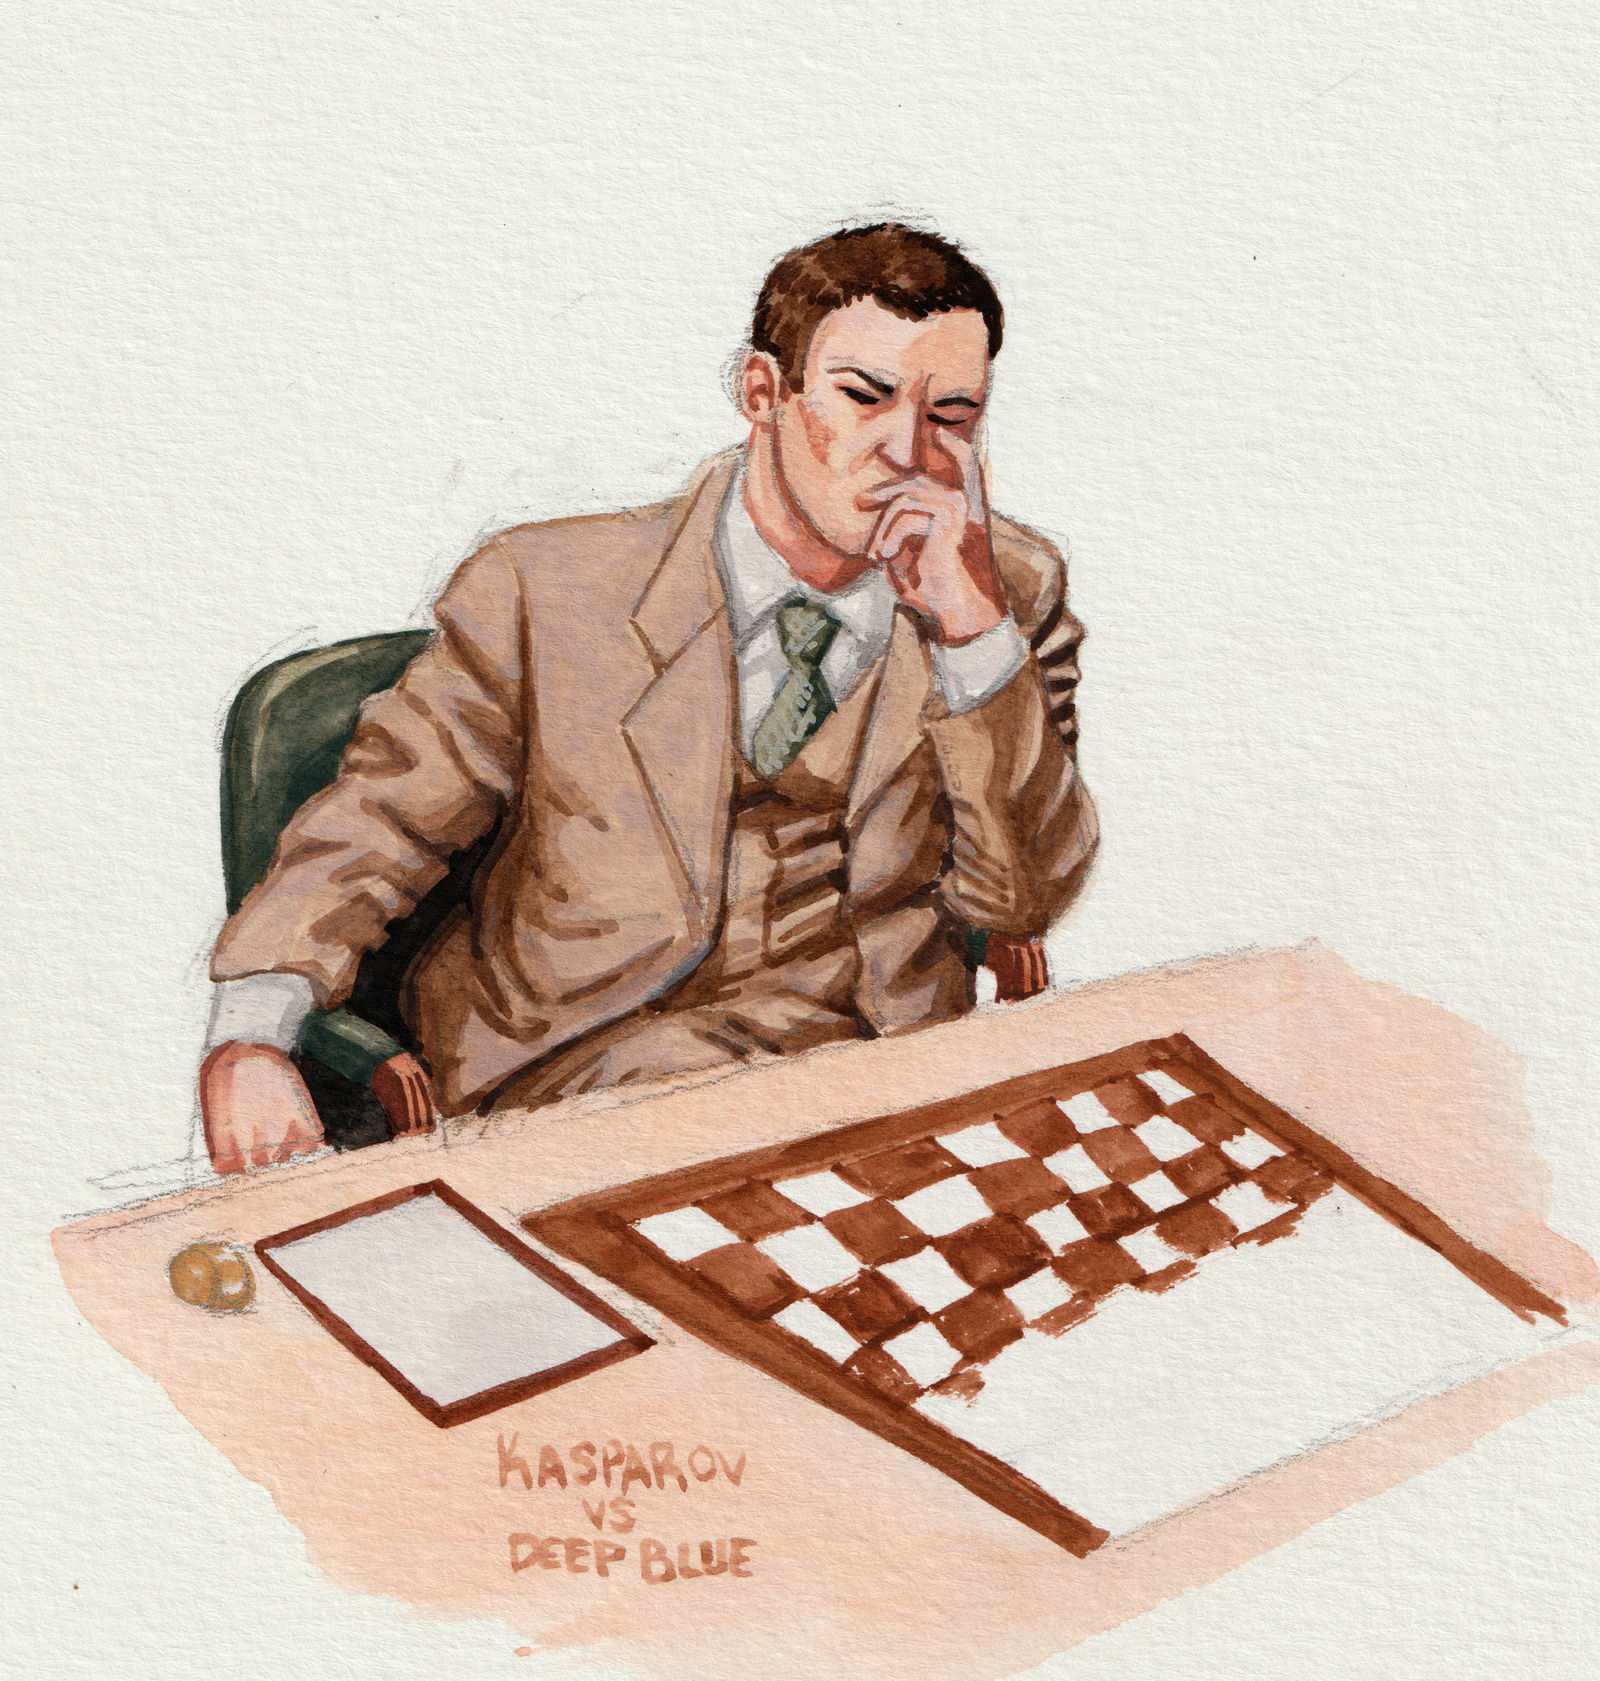 Deep Blue Vs. Kasparov, Game 6